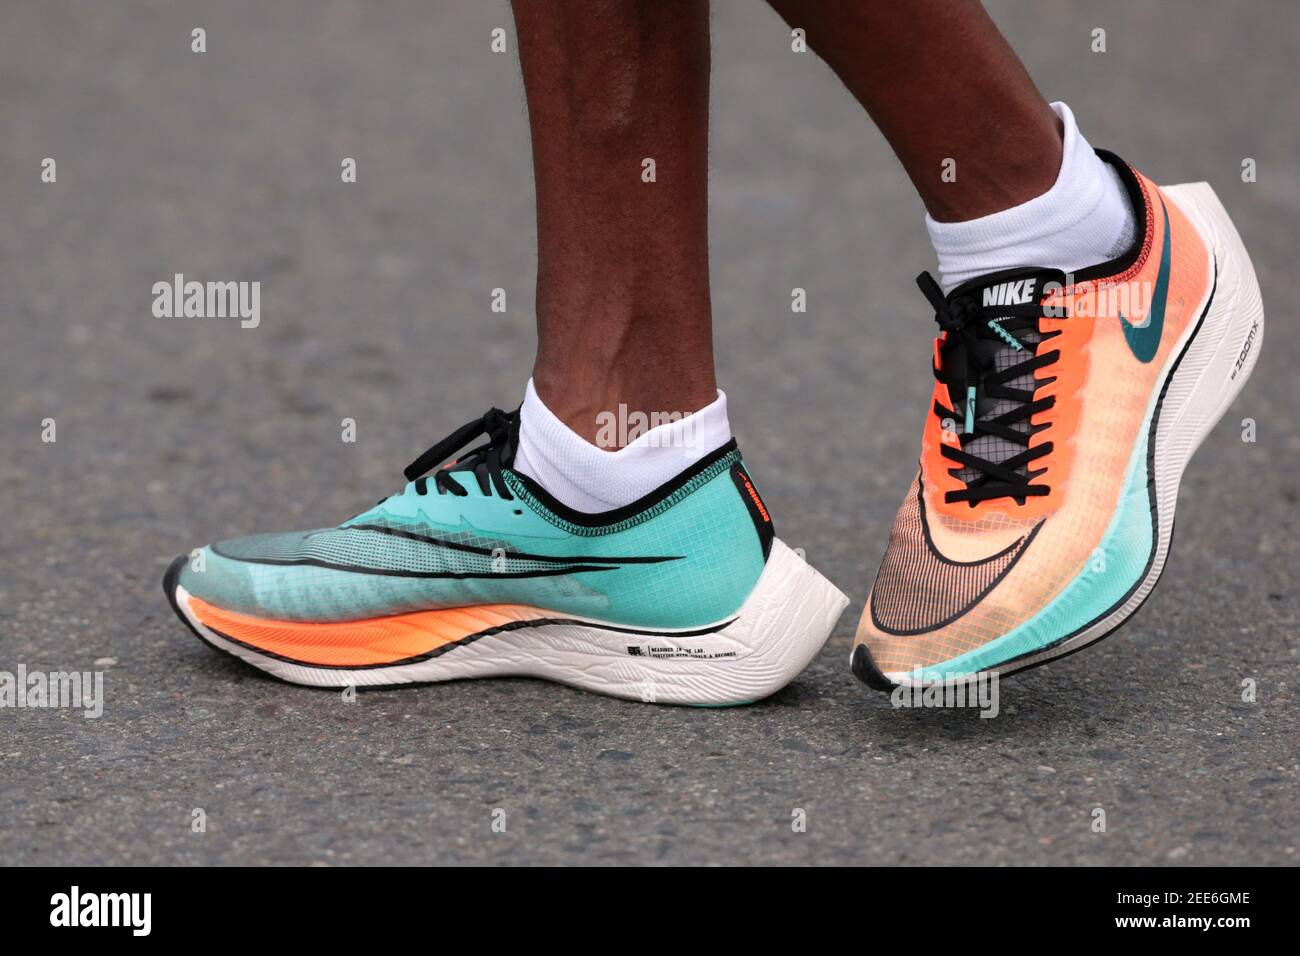 Athlétisme - Marathon de Dubaï - Dubaï, Émirats arabes Unis - 24 janvier  2020 vue générale d'un athlète portant les chaussures Nike Vaporfly  REUTERS/Christopher Pike Photo Stock - Alamy